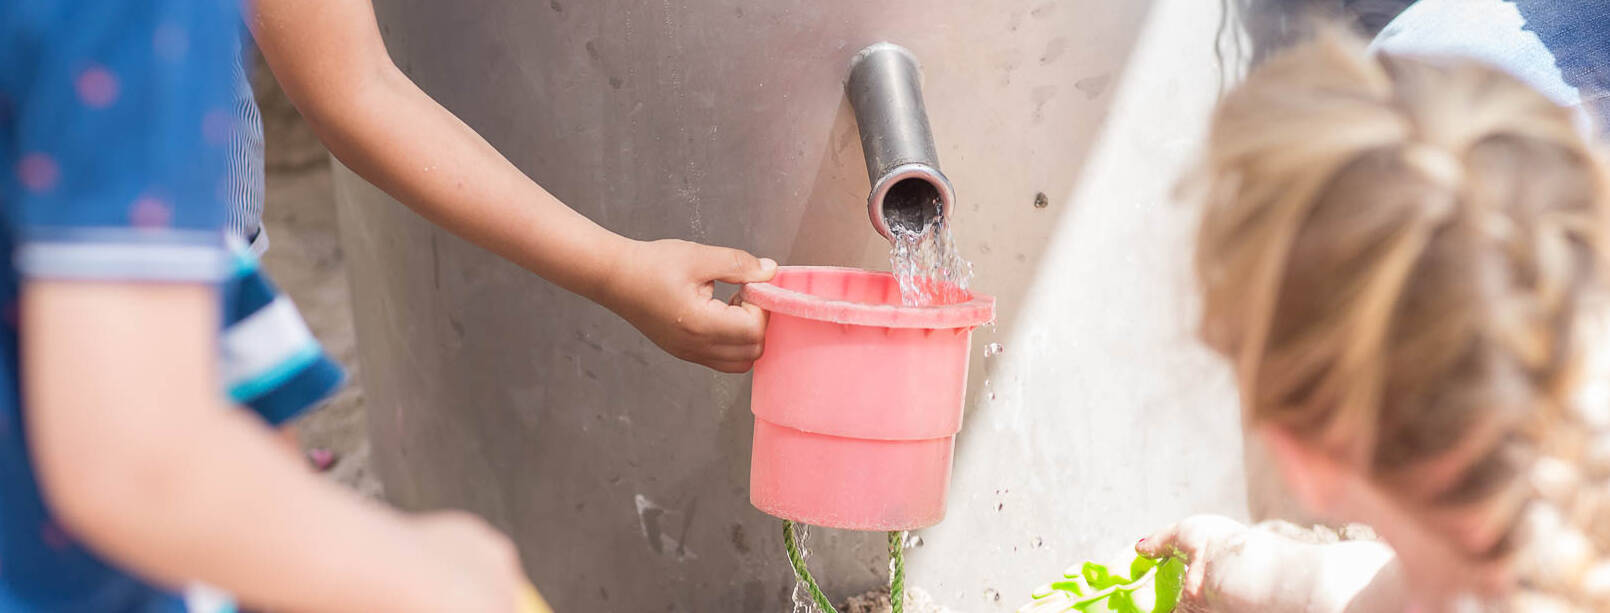 Kinder entnehmen Gartenwasser